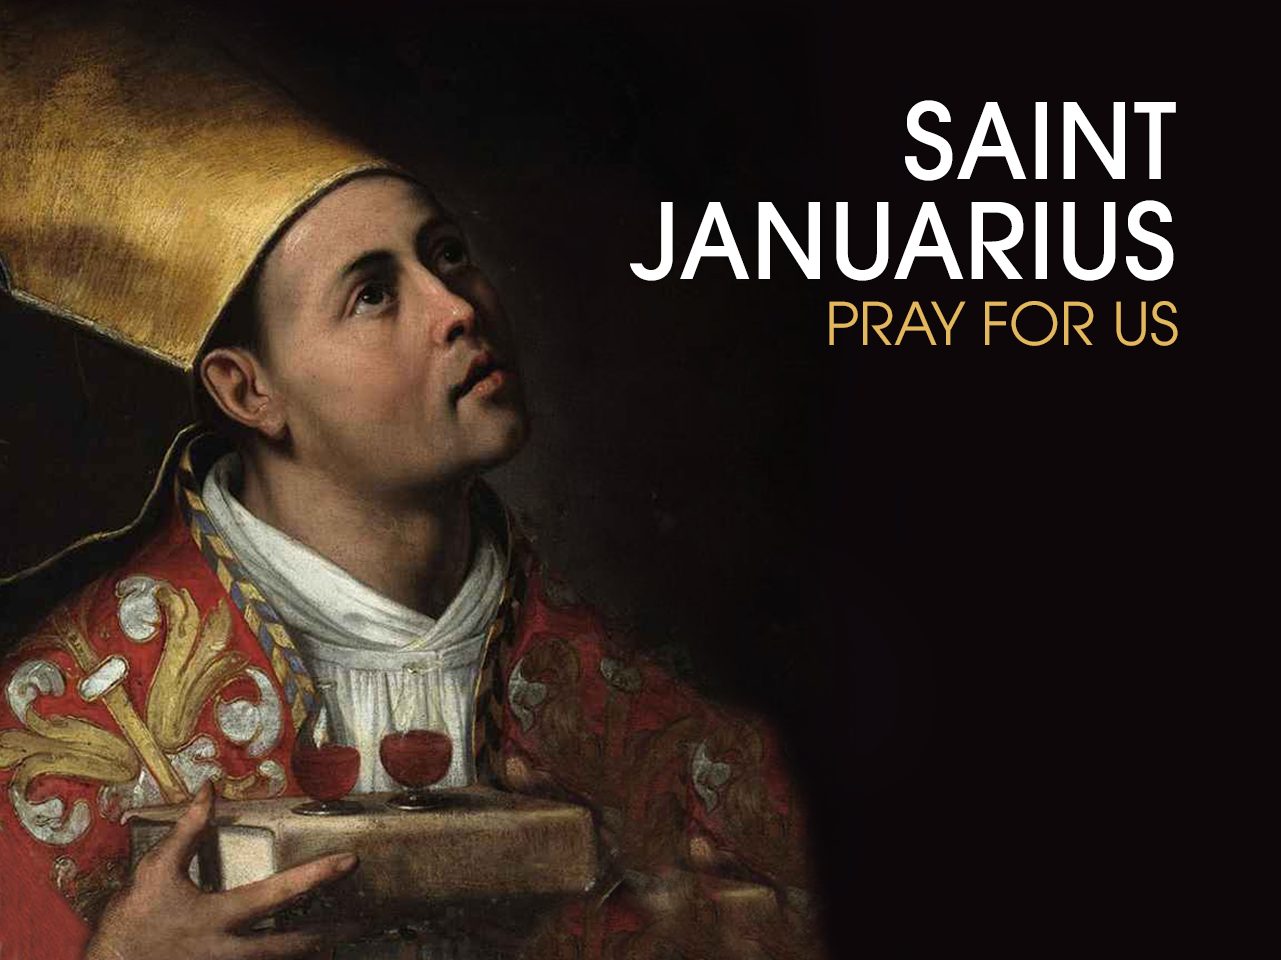 St. Januarius